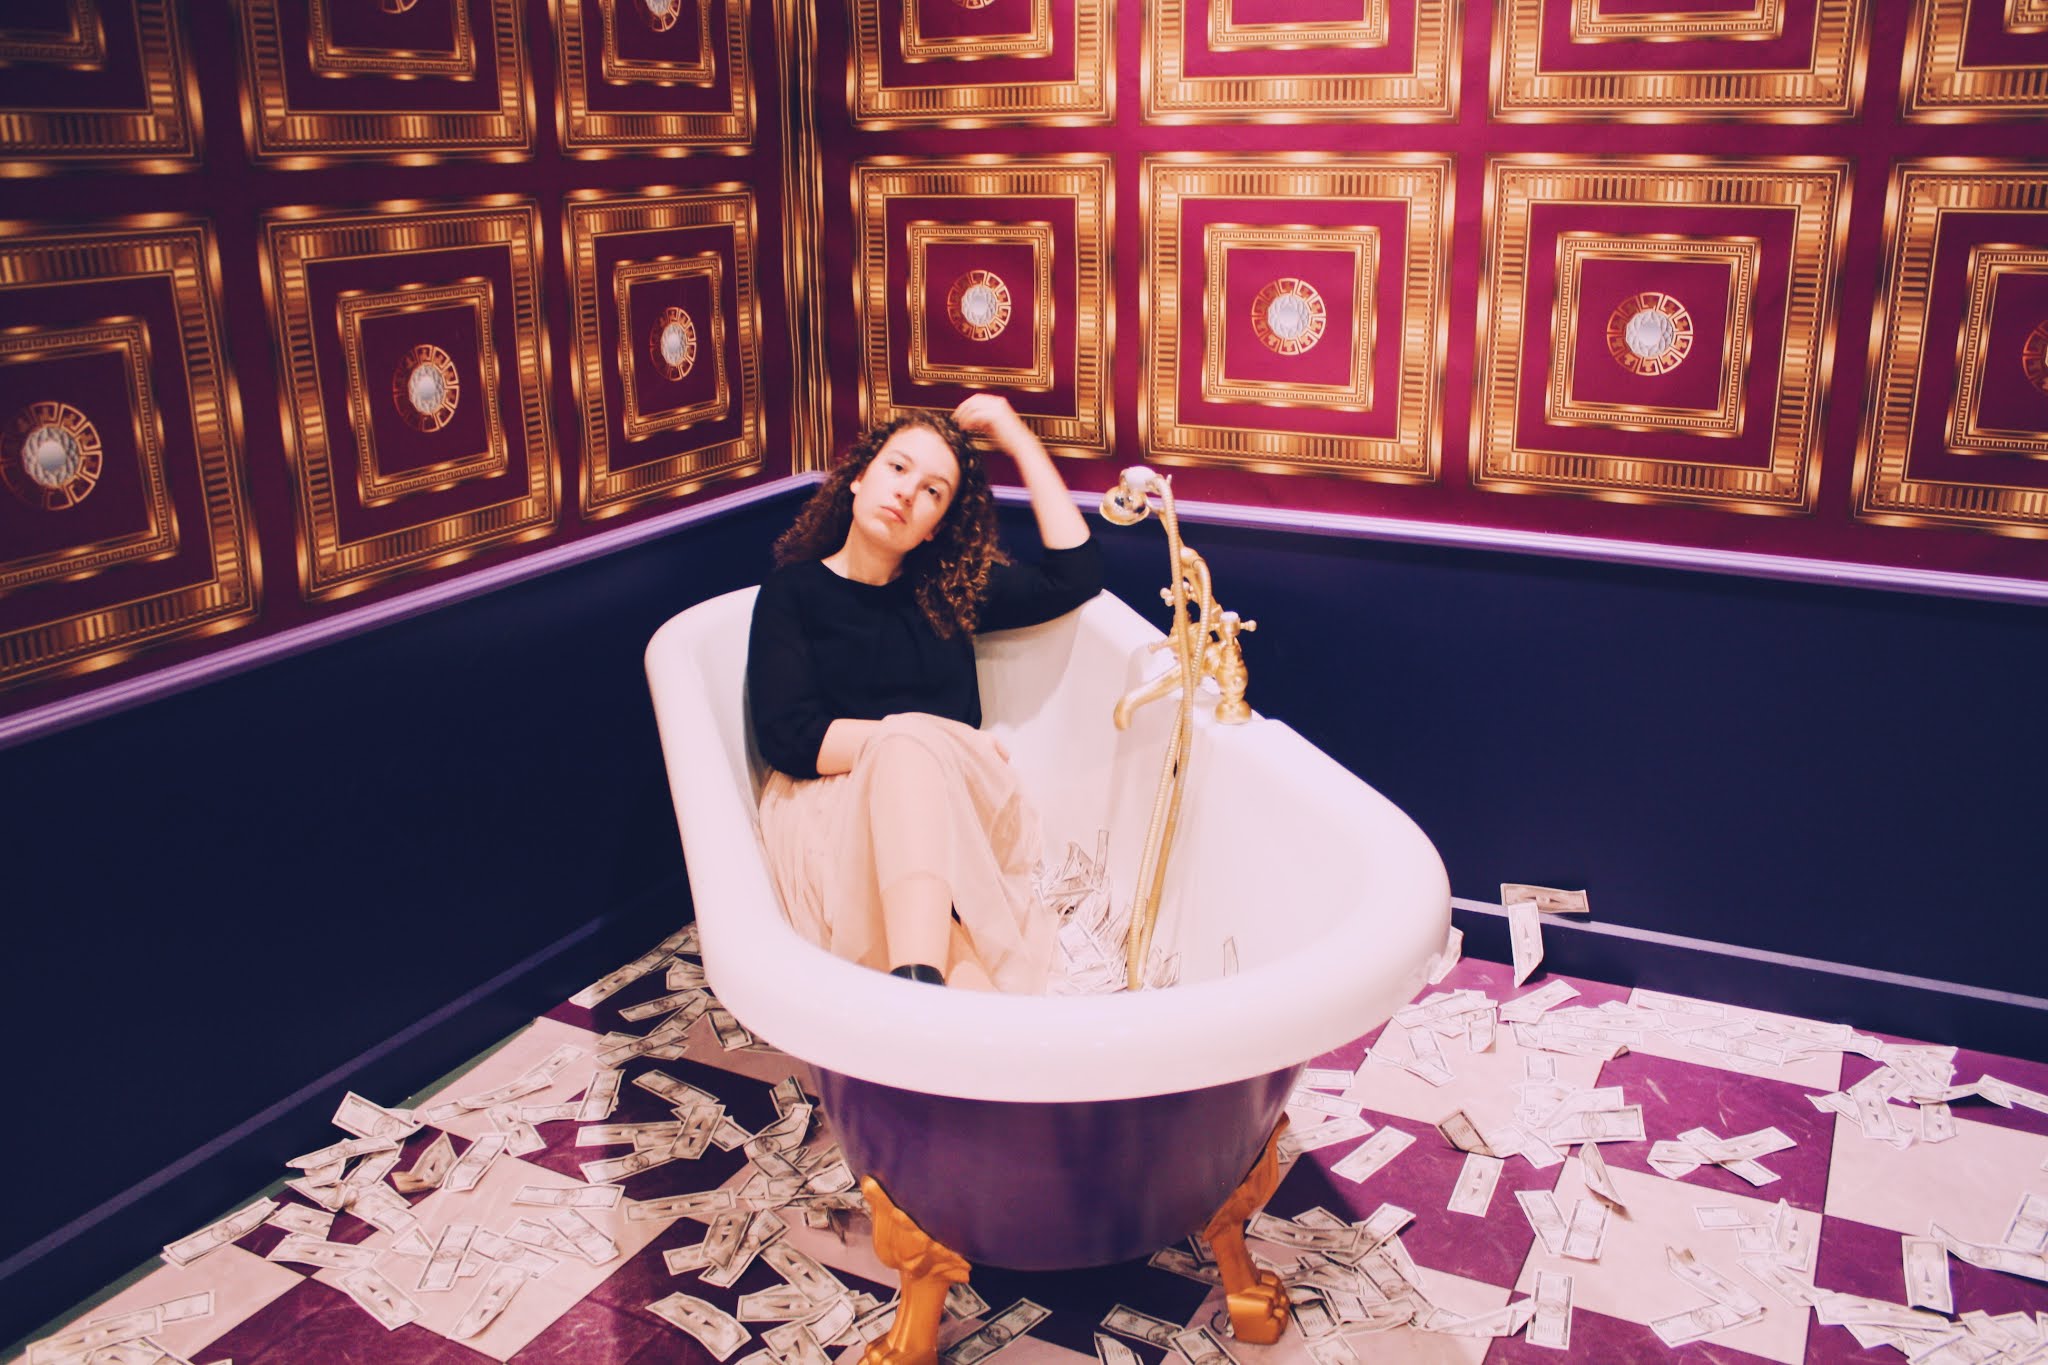 Ik zittend in een bad vol geld in een paars/gouden ruimte